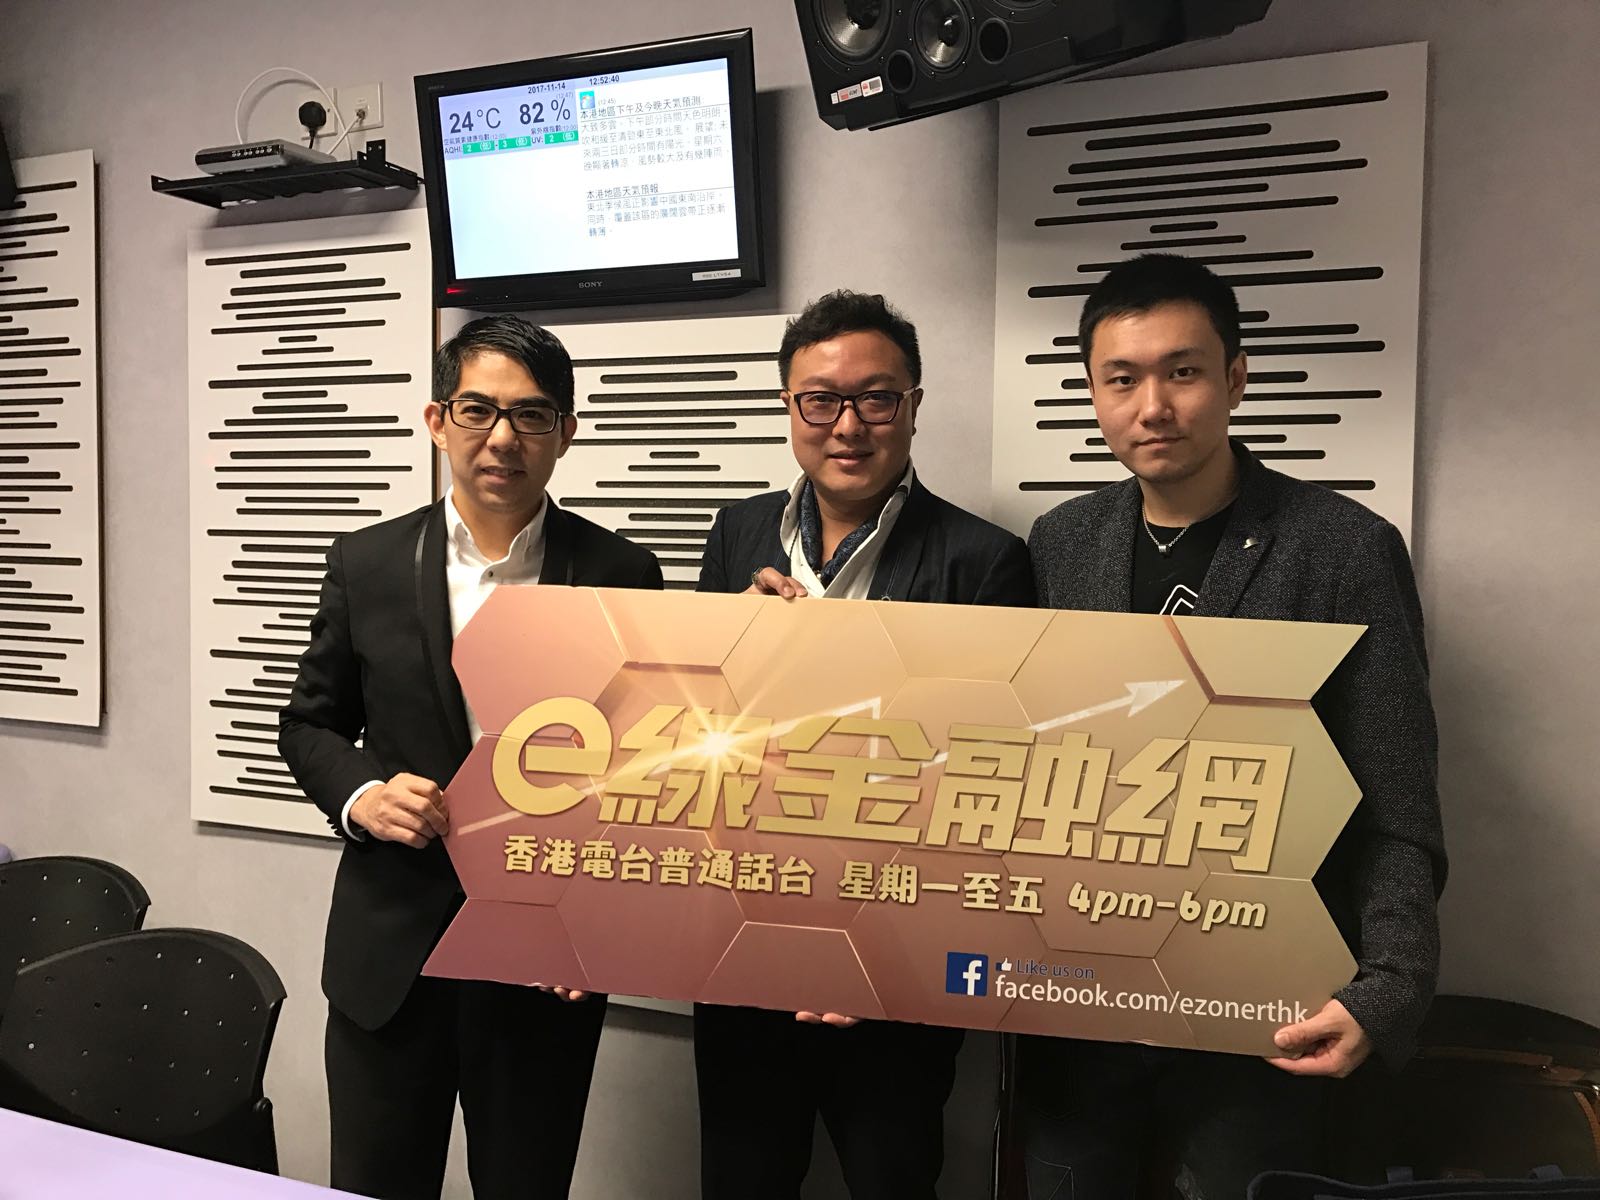 作家媒體報導易風: 香港電台節目 e線金融網《King Sir會客  室》的專訪嘉賓